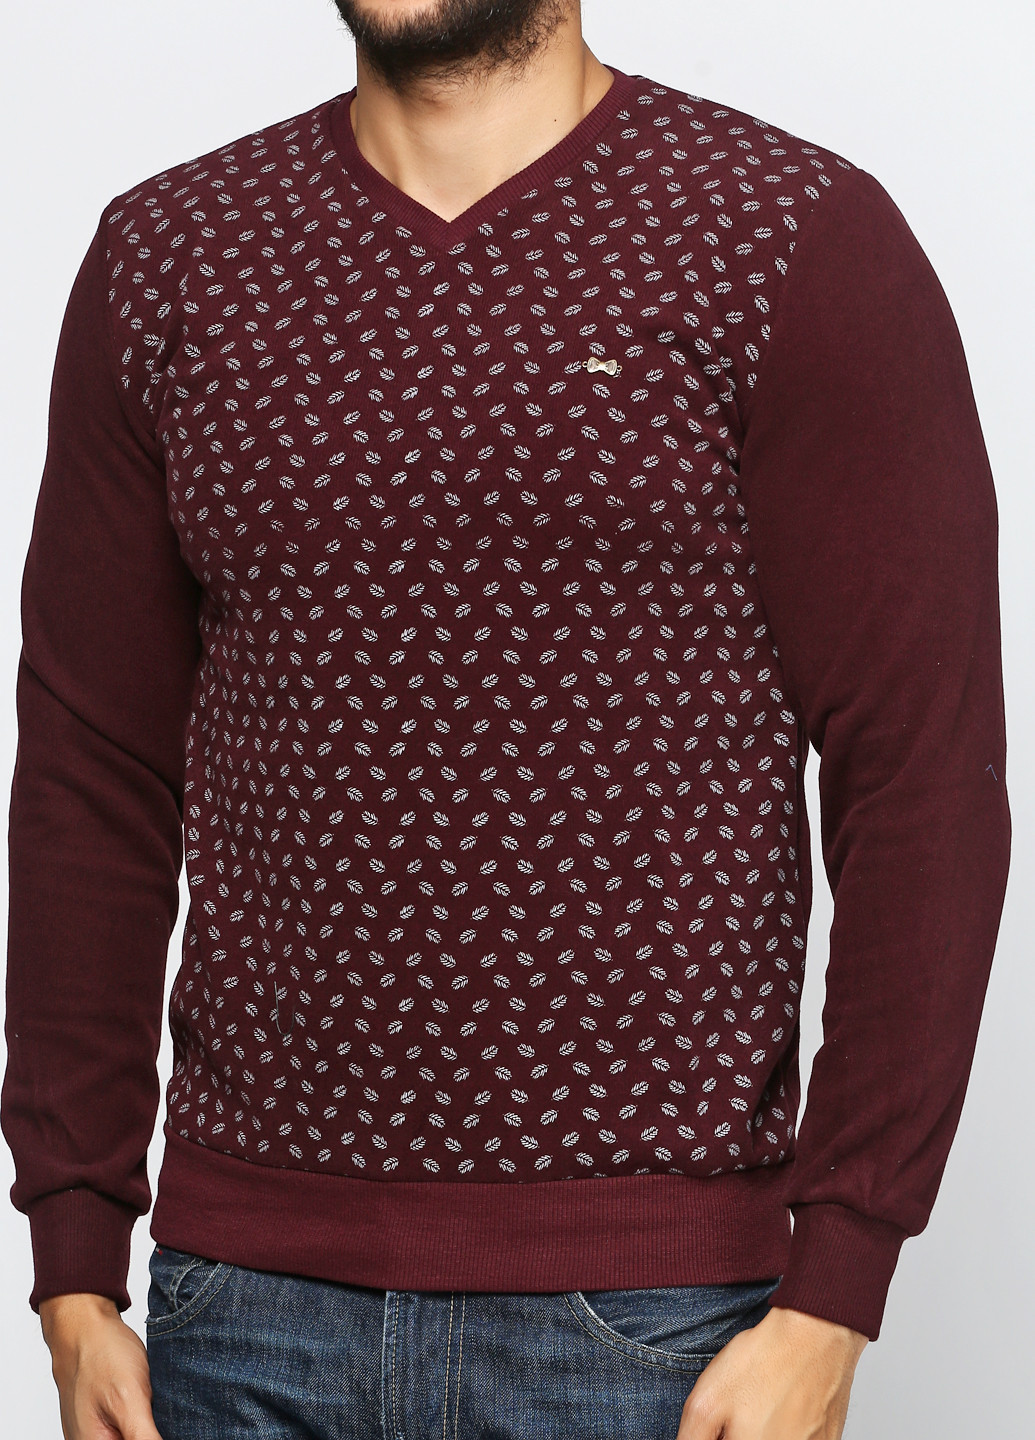 Бордовый демисезонный пуловер пуловер DKM